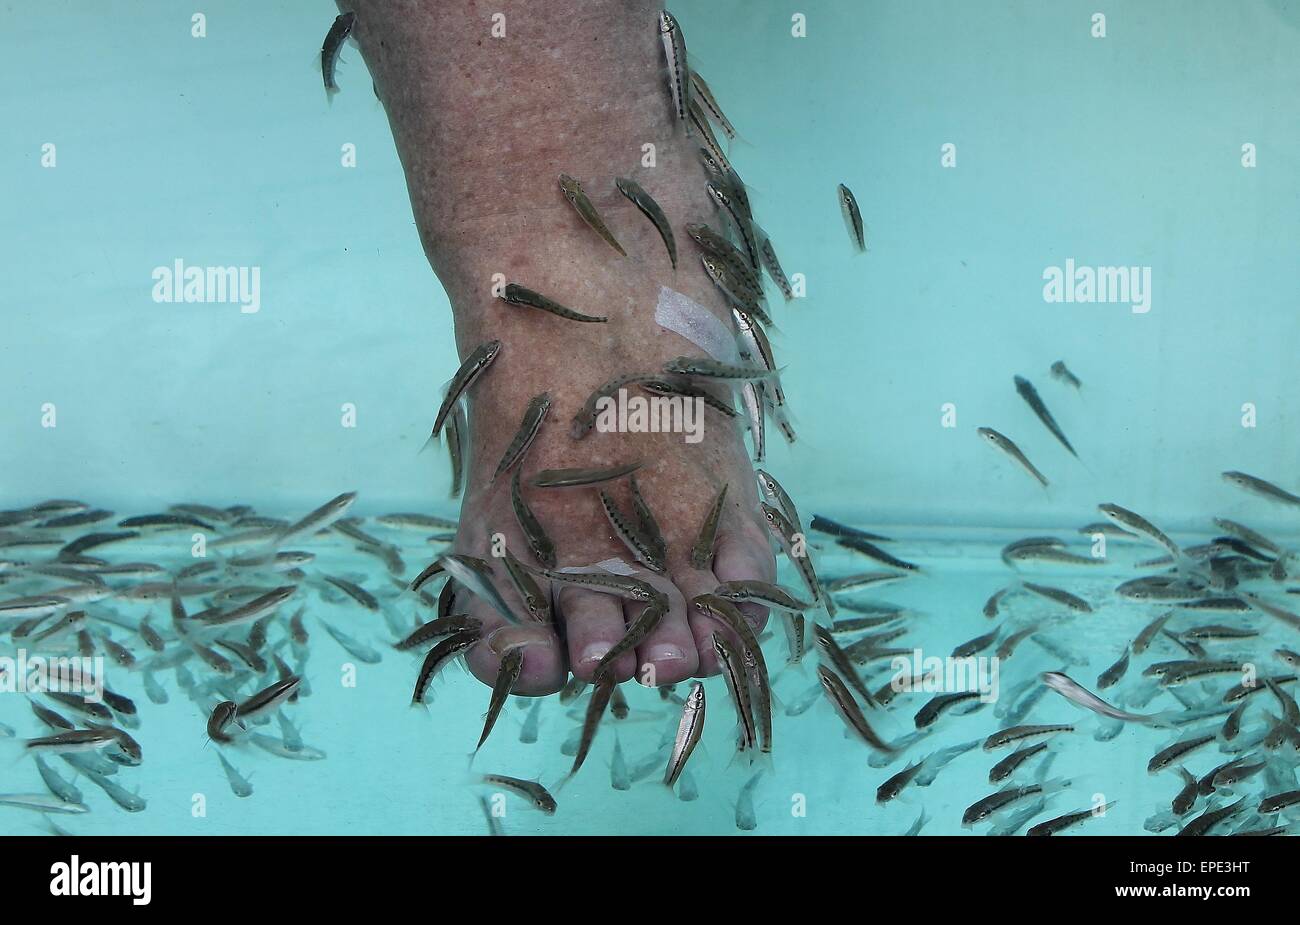 Pediküre Fisch Spa. rufa garra Fisch Spa Behandlung. aus der Nähe von Fisch und Füße im blauen Wasser. Stockfoto